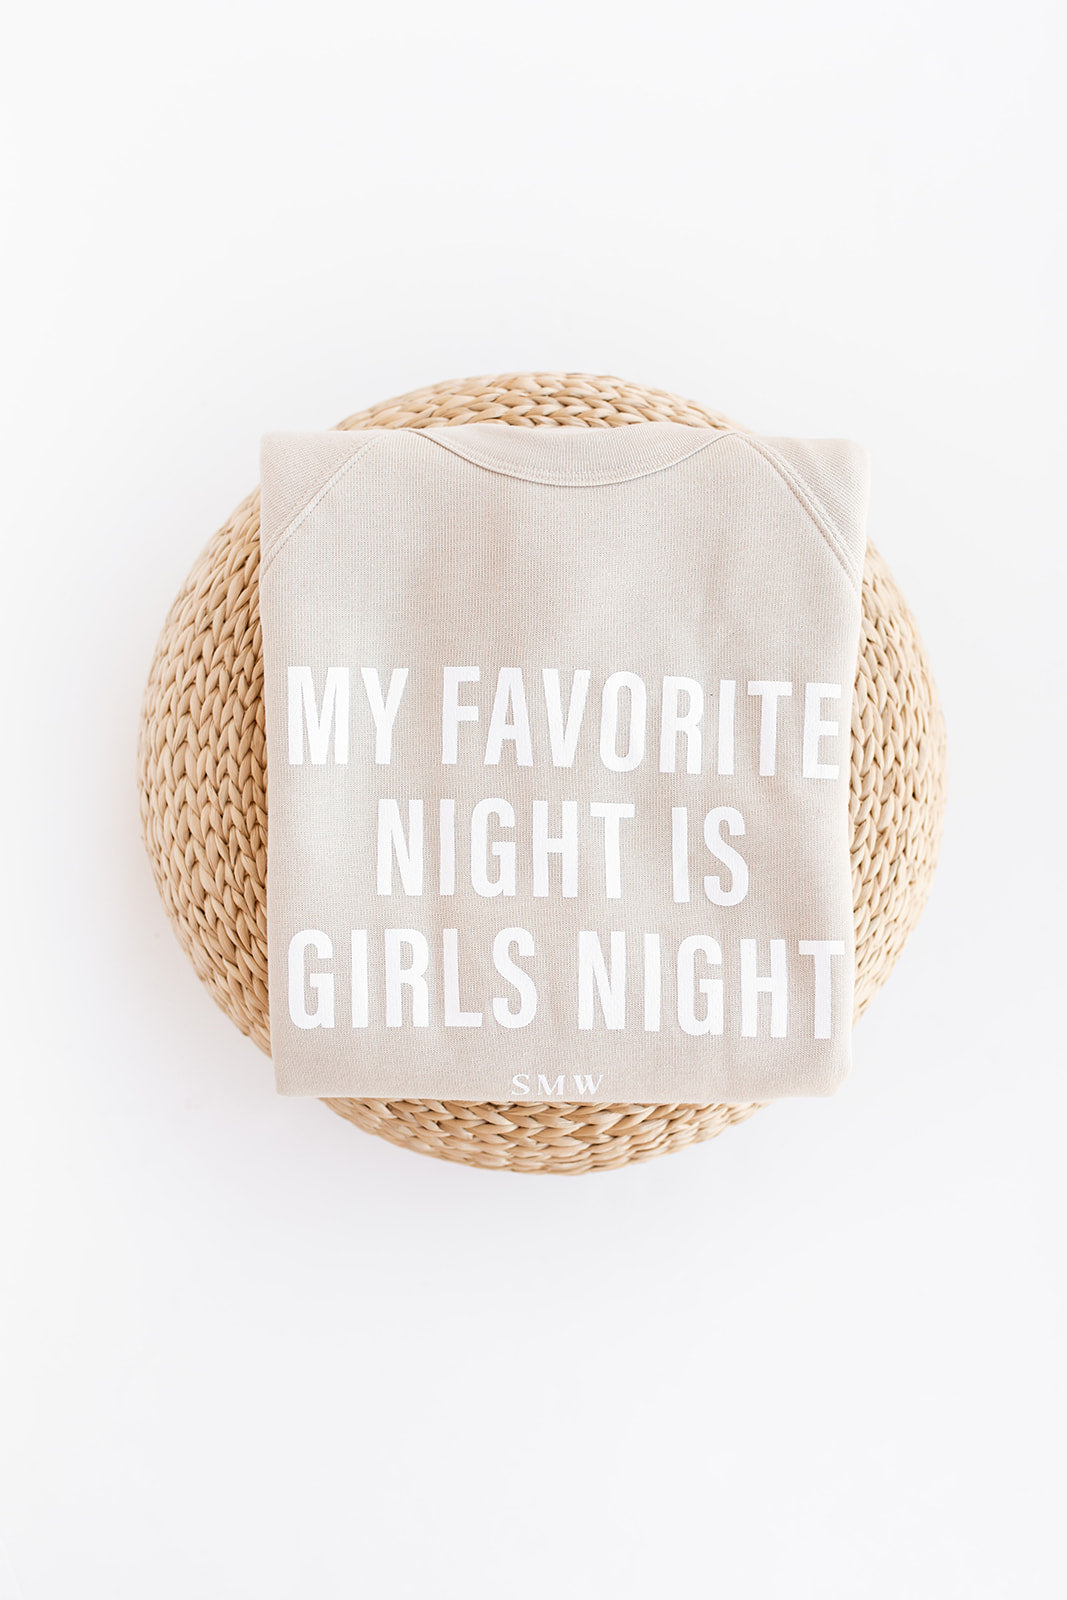 Signature Girls Night Sweatshirt for women